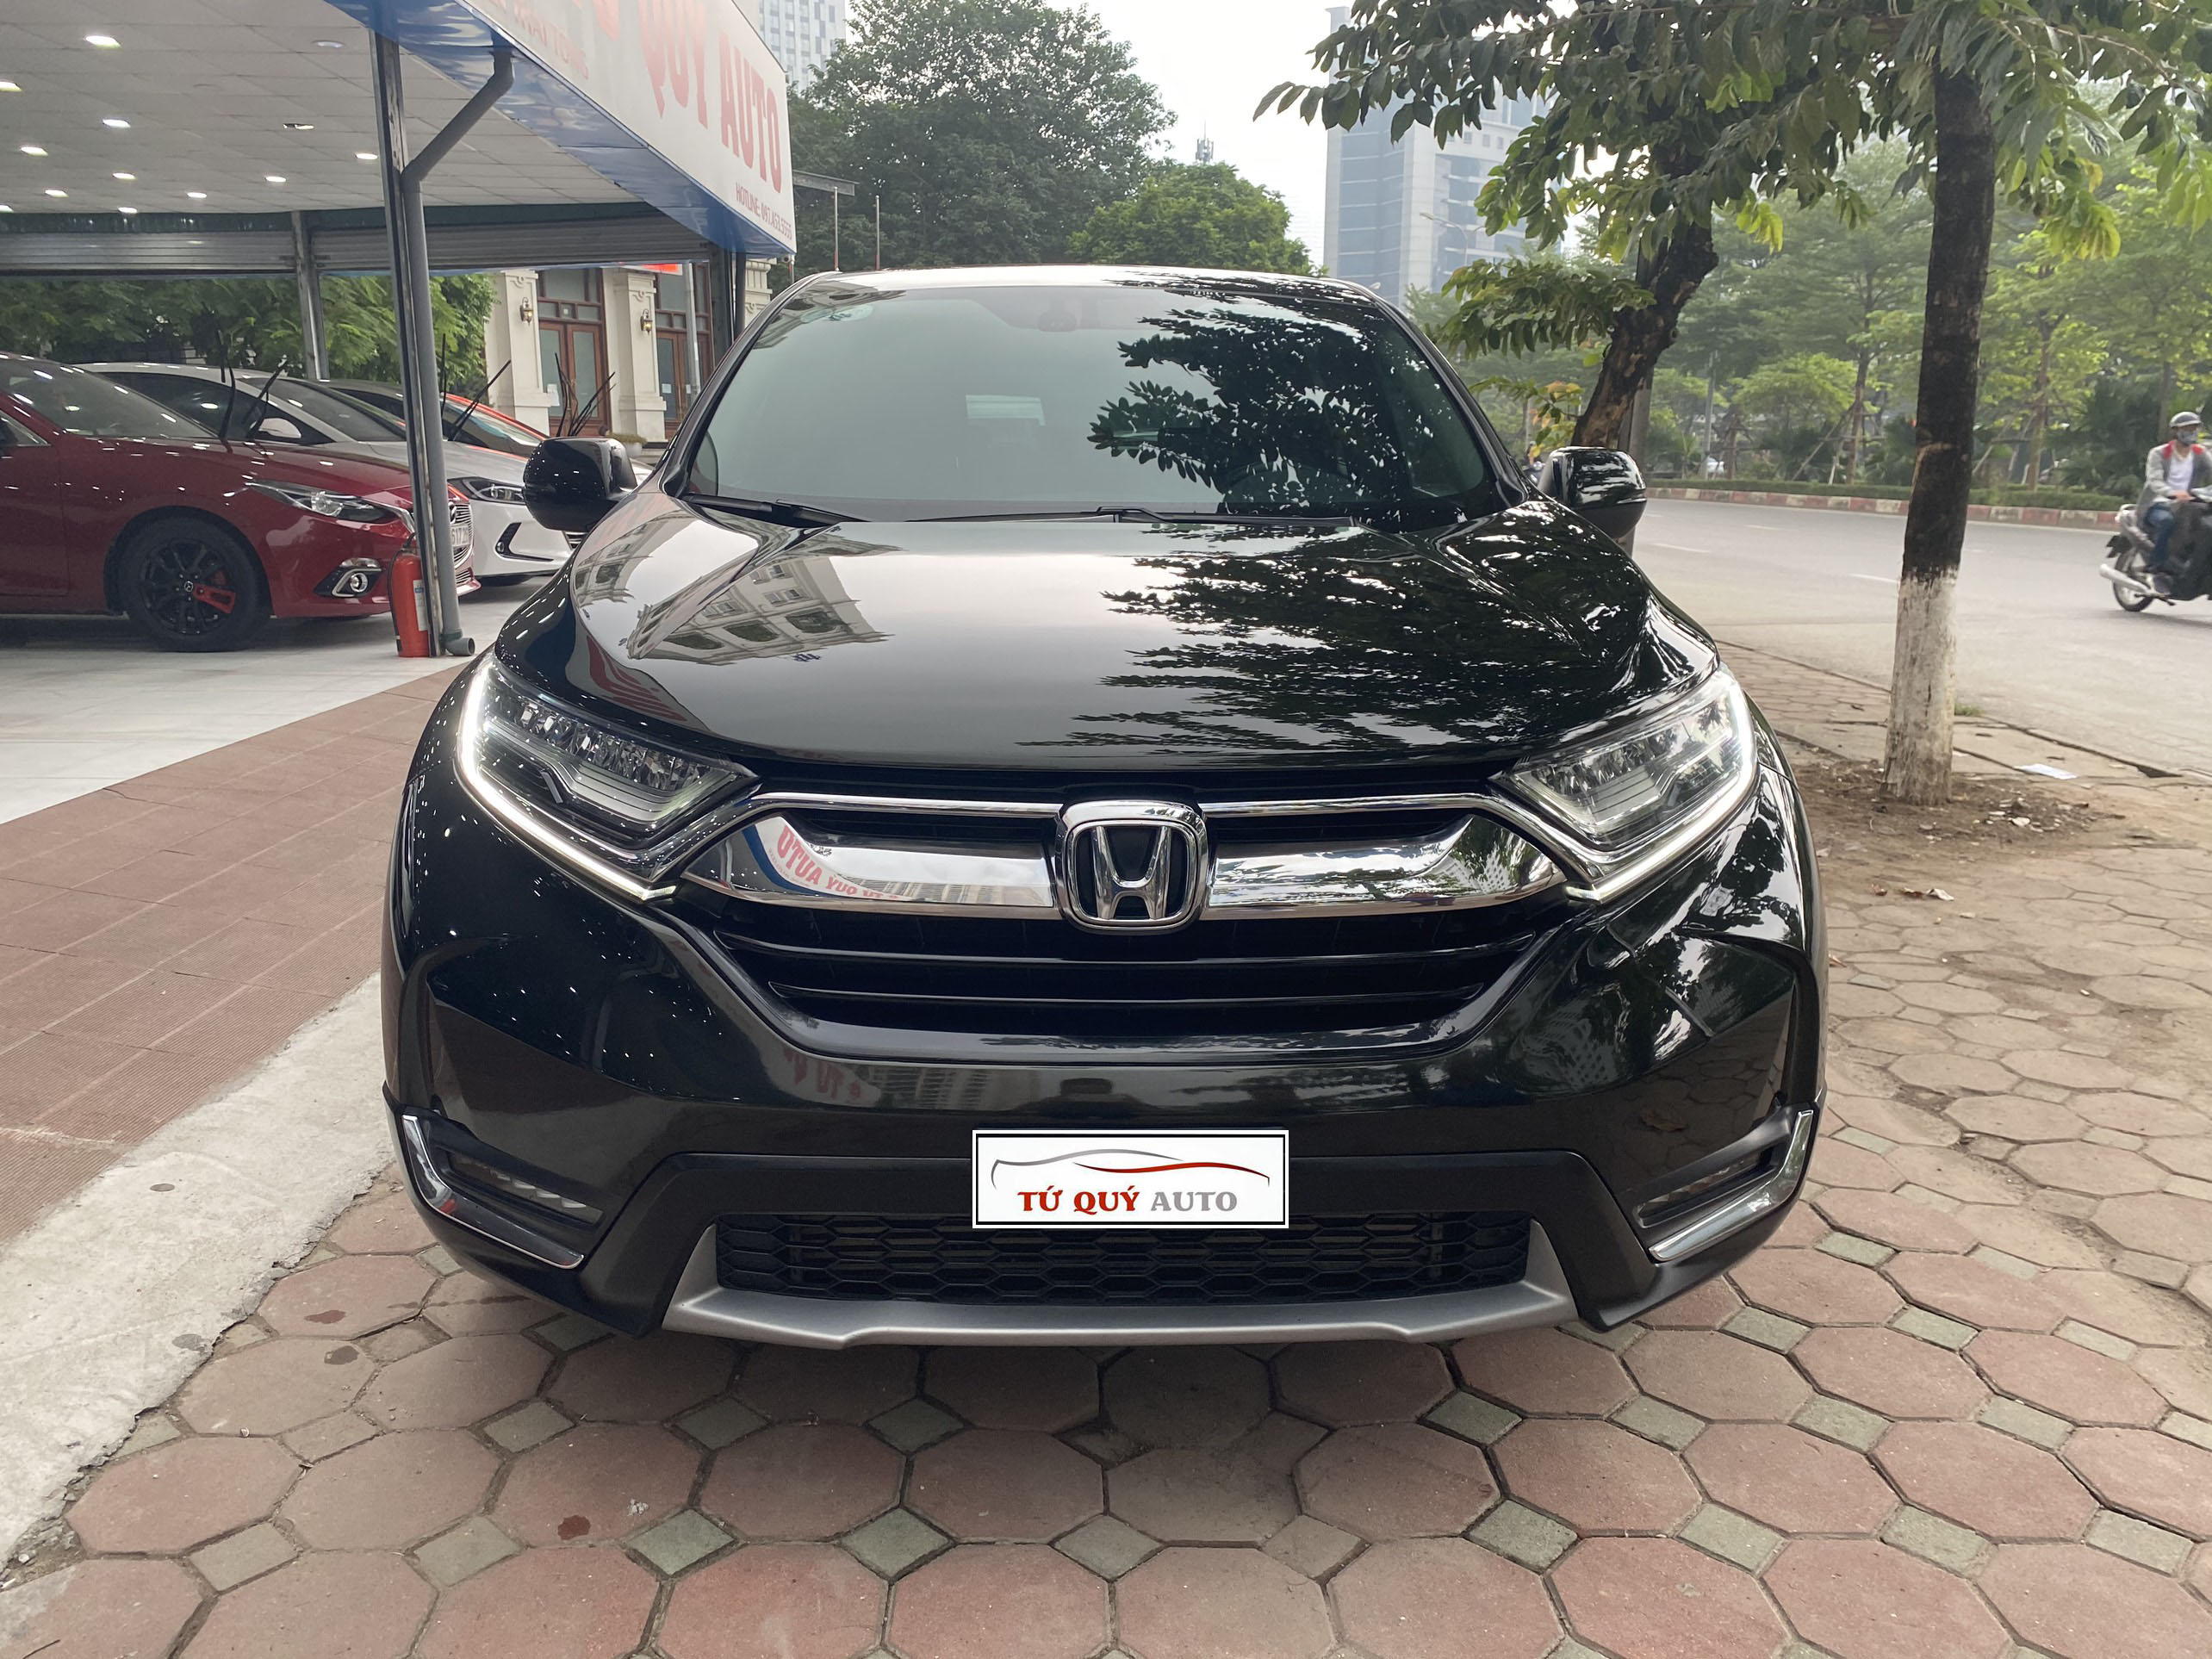 Bệ Bước Điện Cho Xe Honda CRV 2018 Đóng Mở Tự Động